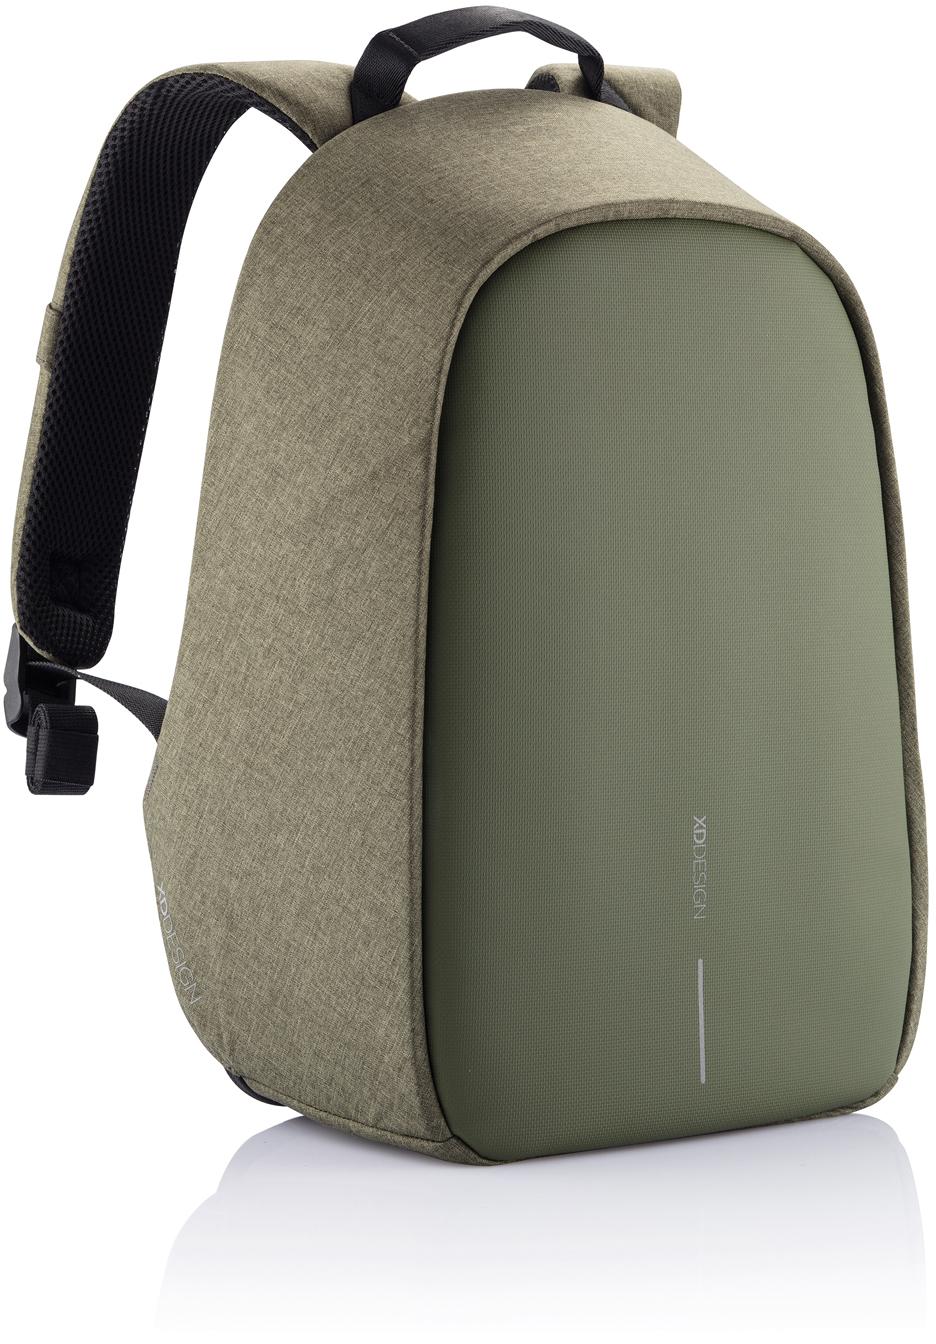 Артикул: XP705.707 — Антикражный рюкзак Bobby Hero Small, зеленый